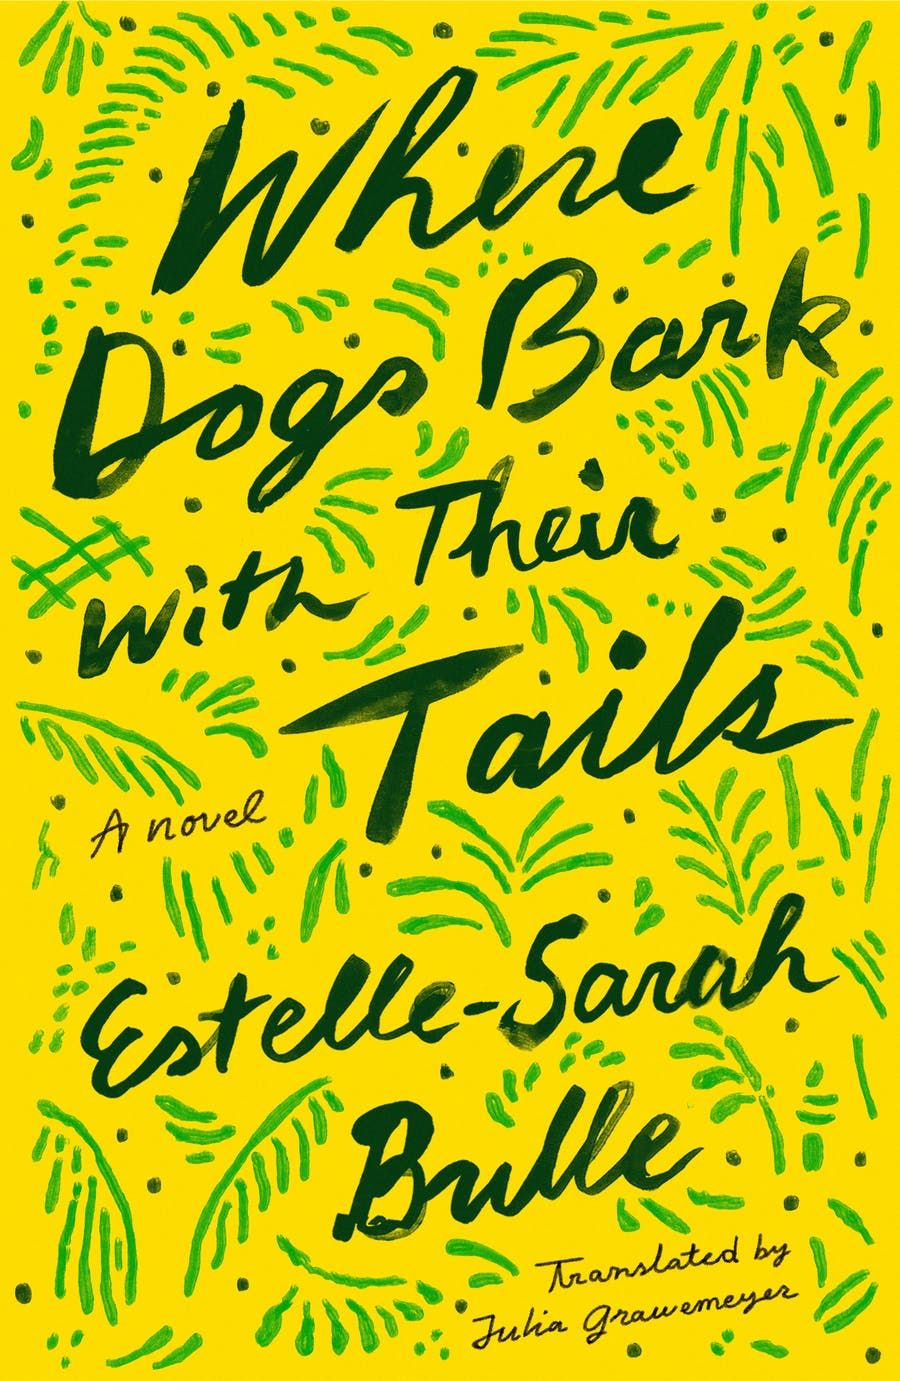 Köpeklerin Masallarıyla Havladığı Yer, Estelle-Sarah Bulle